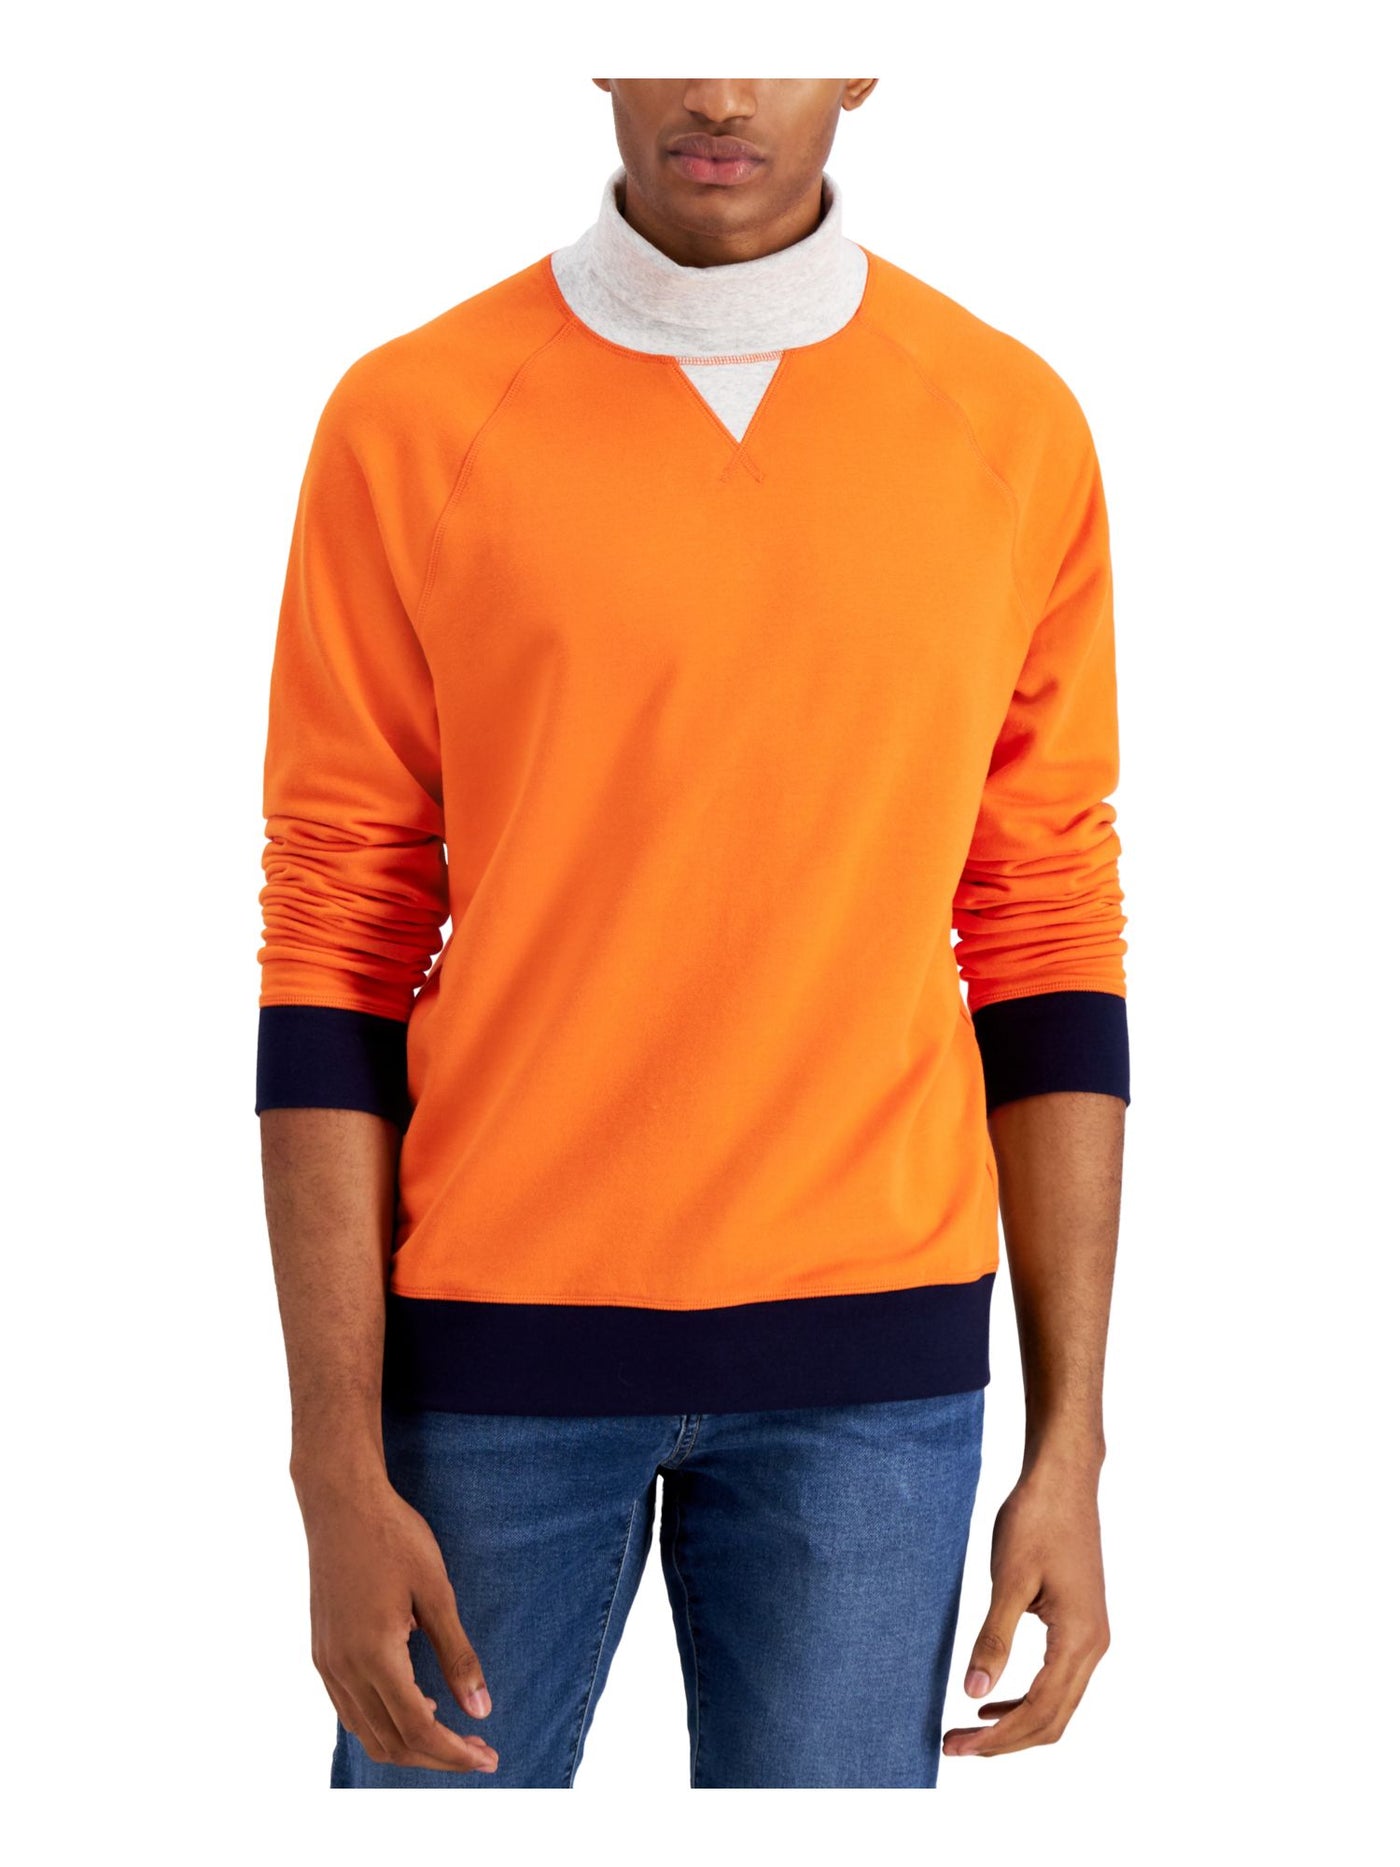 CLUBROOM Mens Orange Turtle Neck Classic Fit Fleece Sweatshirt XL